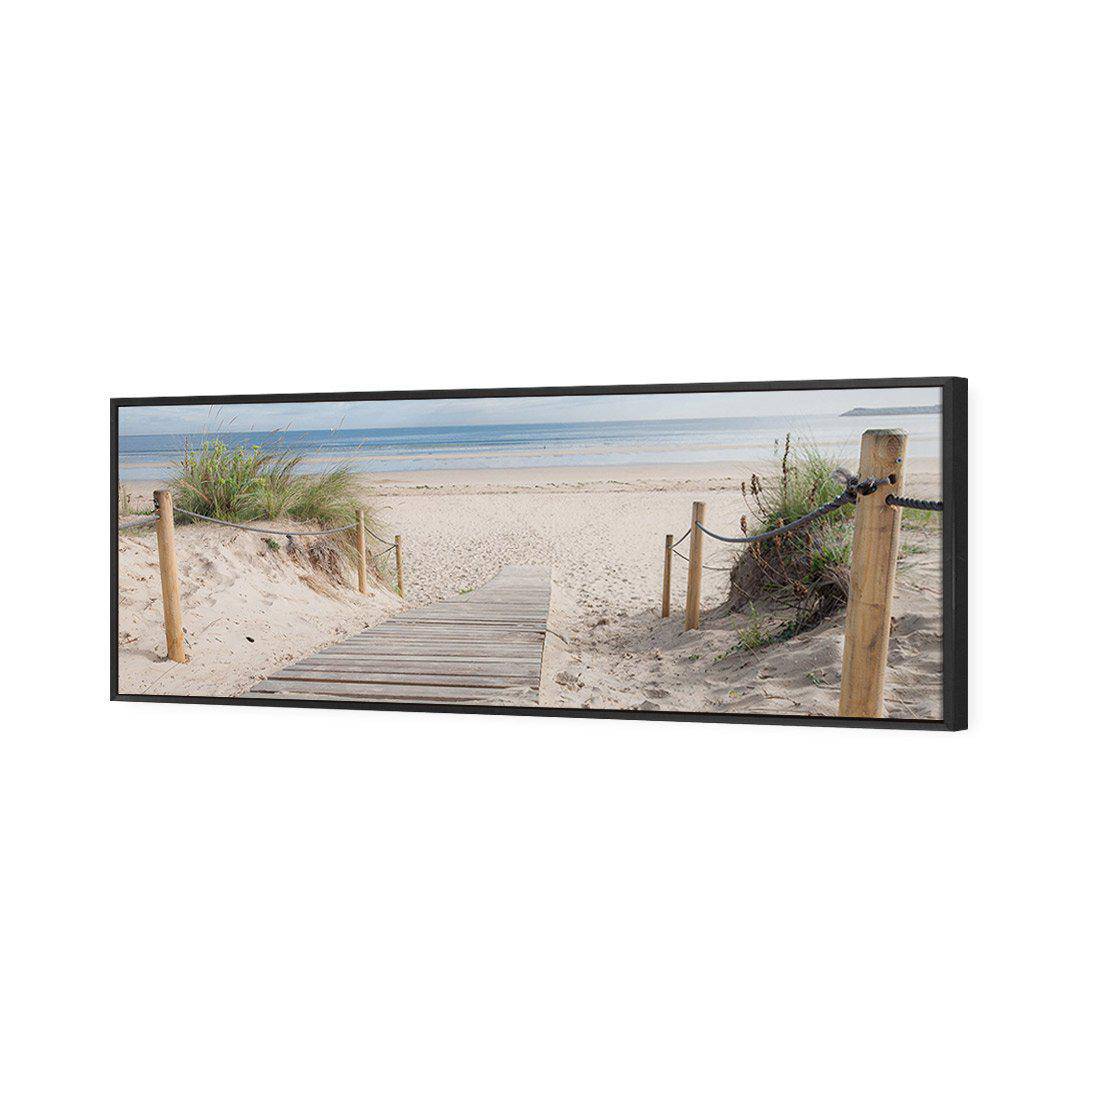 Beach Path Canvas Art-Canvas-Wall Art Designs-60x20cm-Canvas - Black Frame-Wall Art Designs